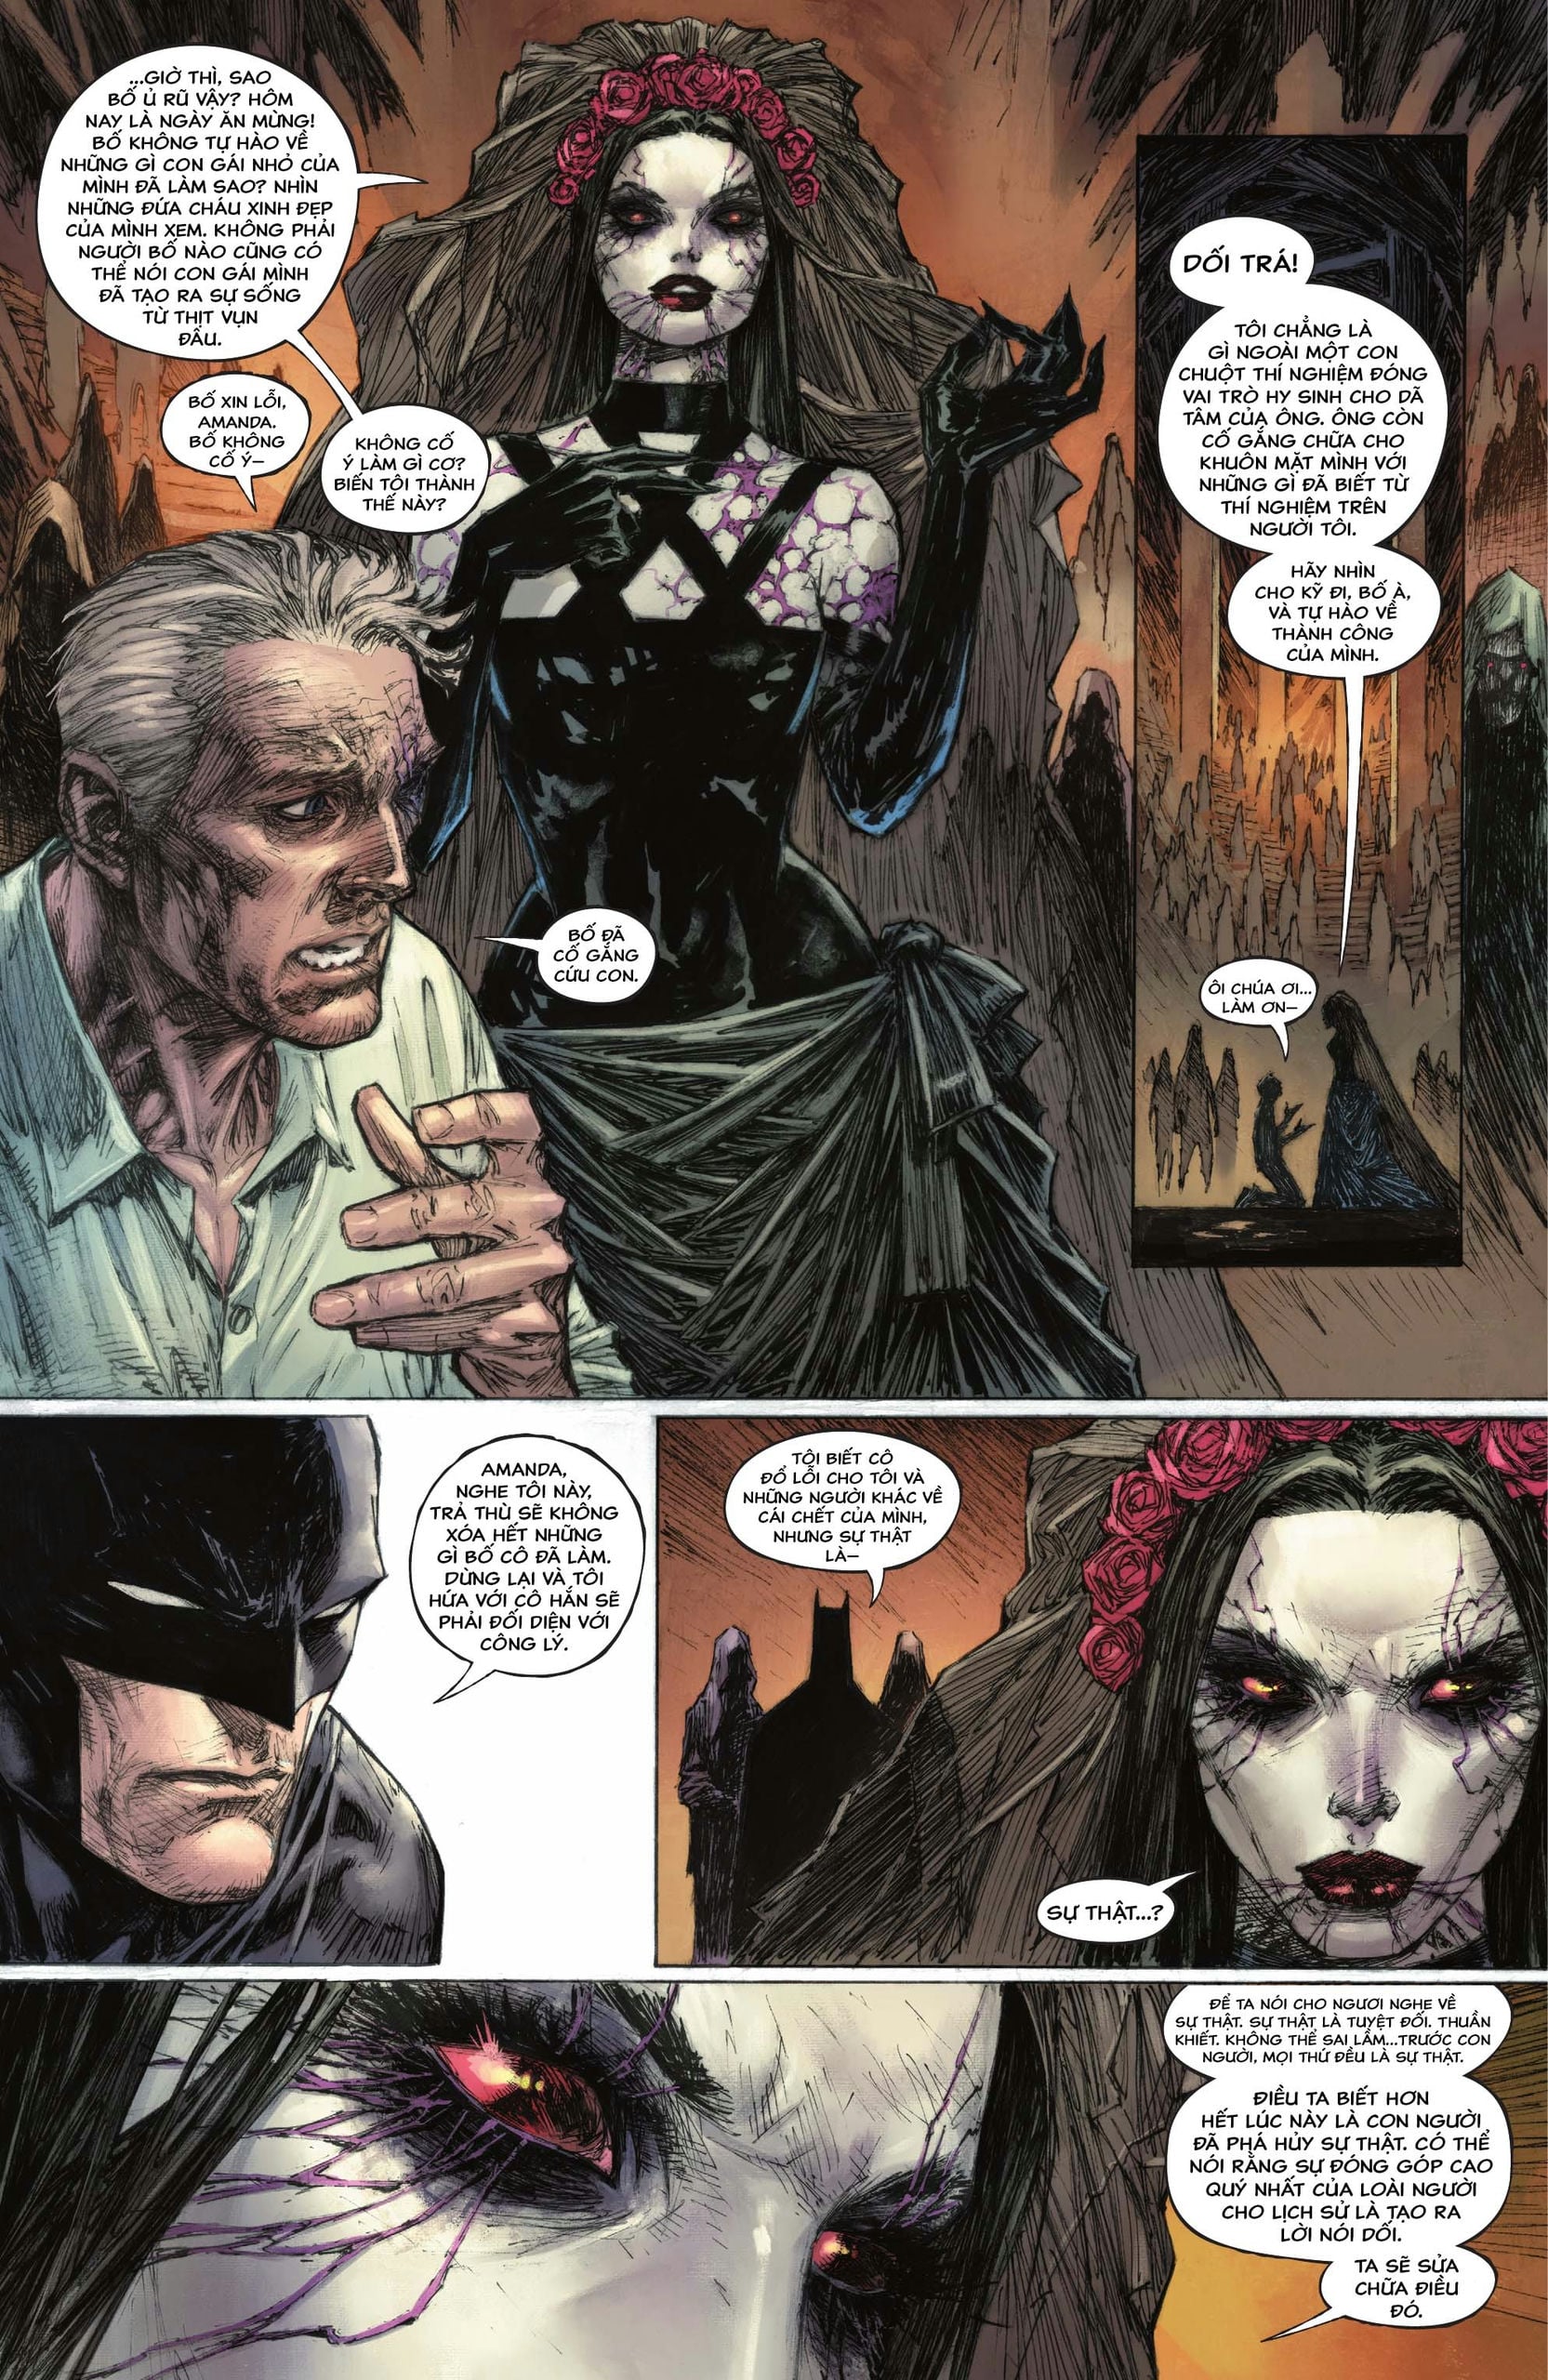 https://langgeek.net/wp-content/webpc-passthru.php?src=https://langgeek.net/wp-content/uploads/2023/05/Batman-_-The-Joker-The-Deadly-Duo-2022-006-008.jpg&nocache=1